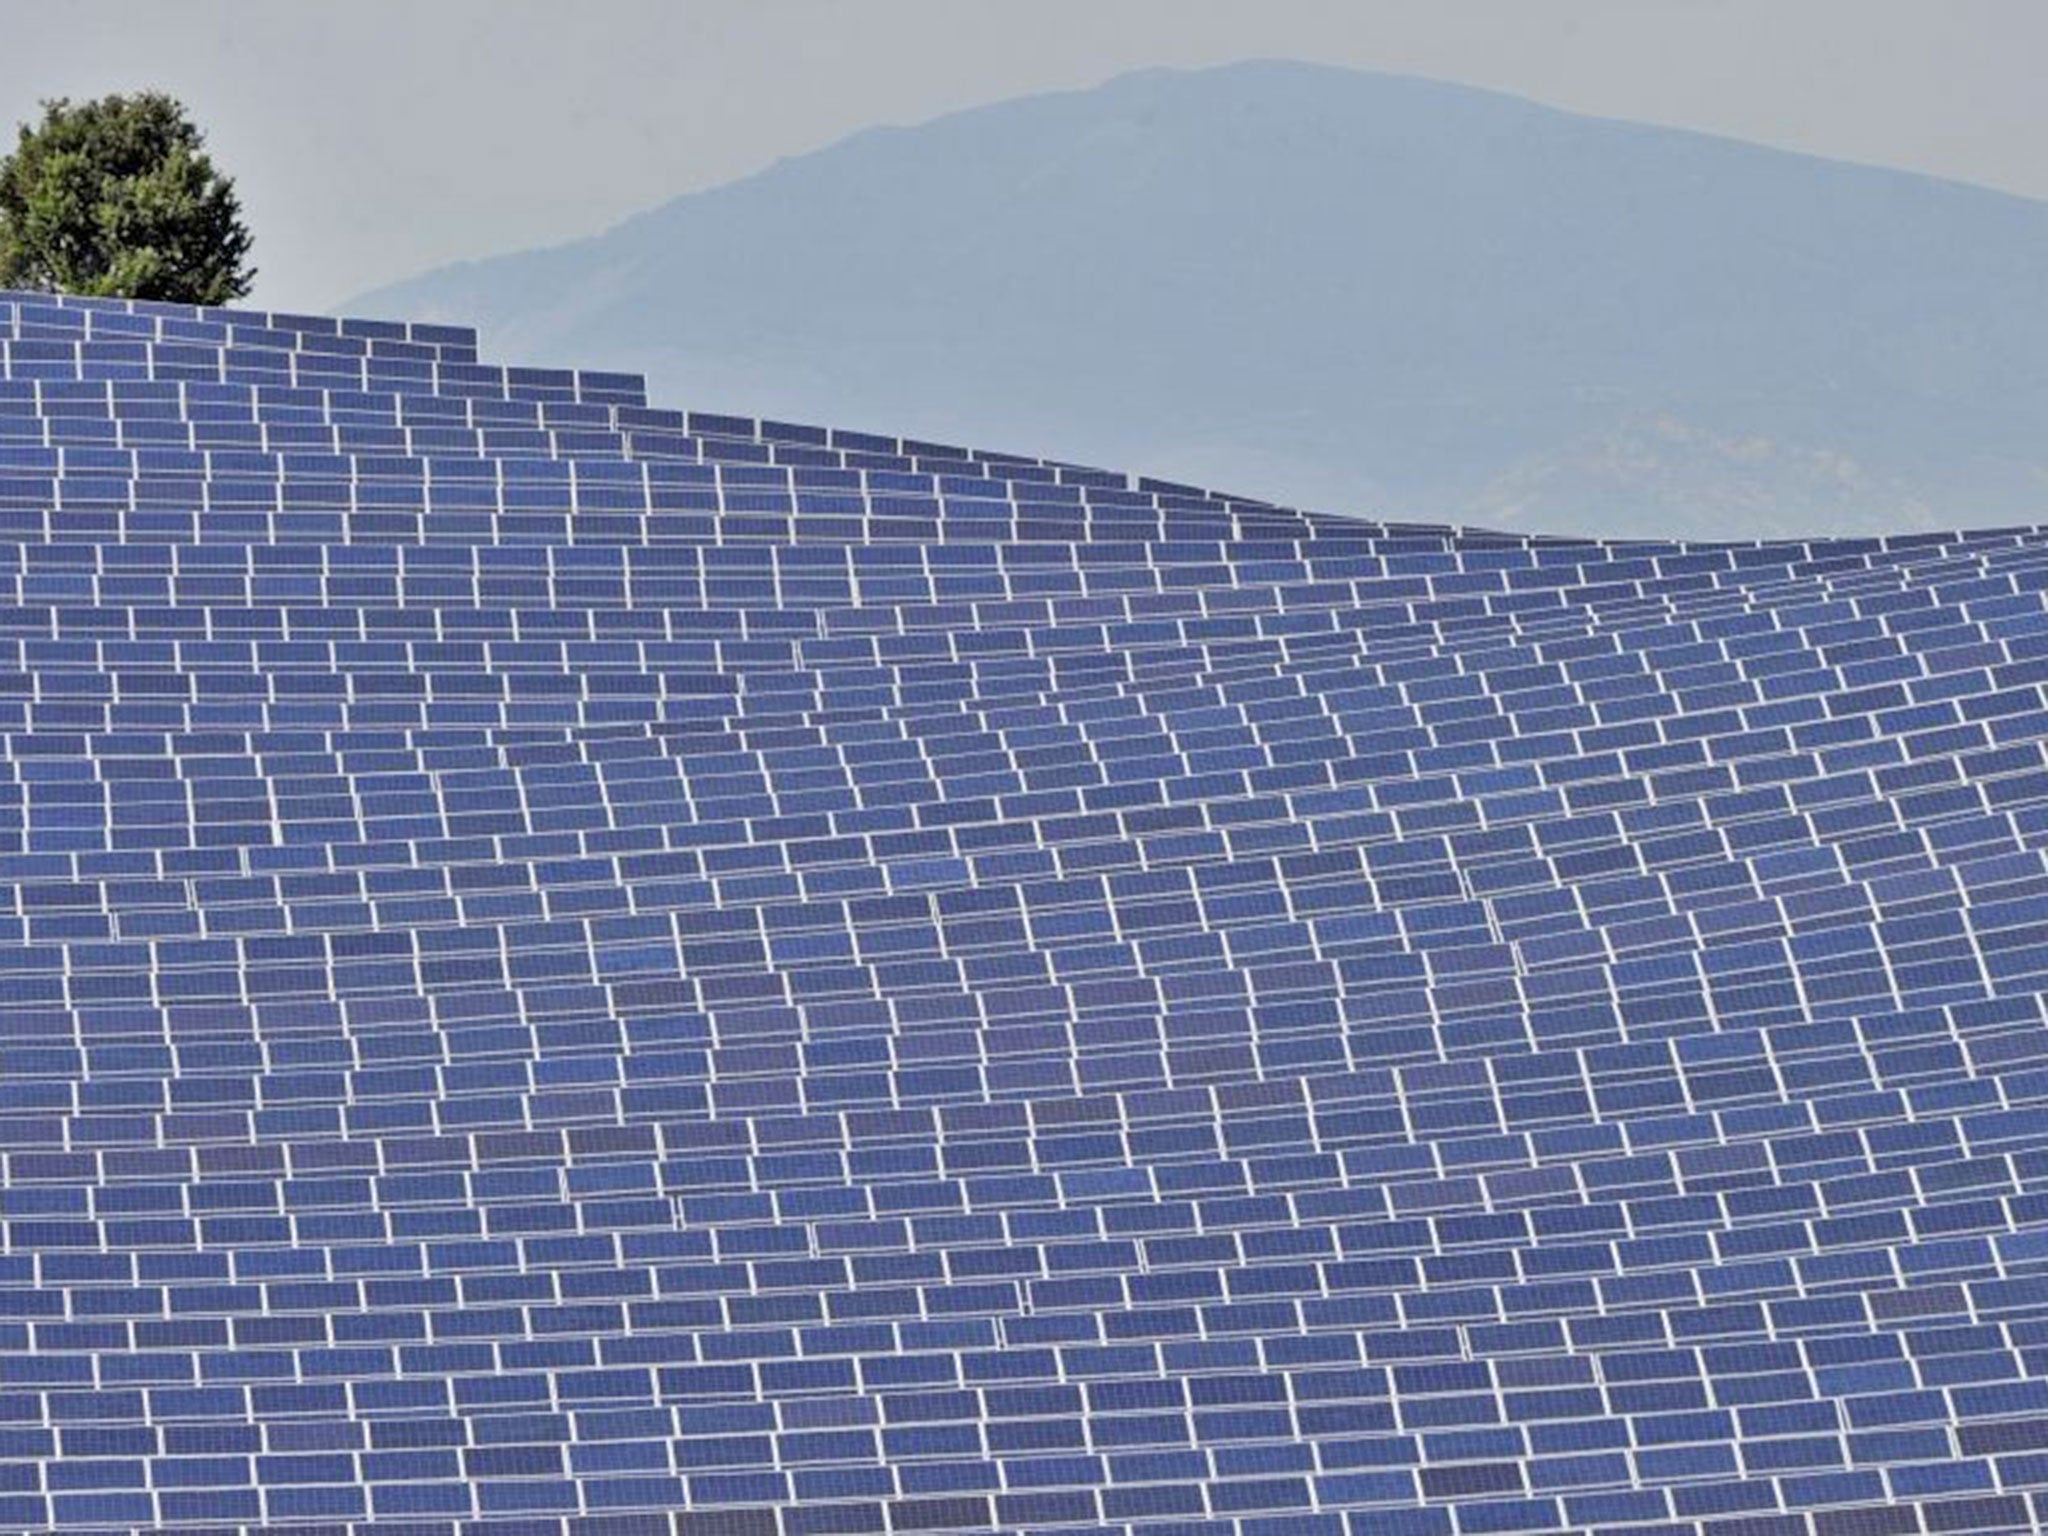 A solar energy farm in France